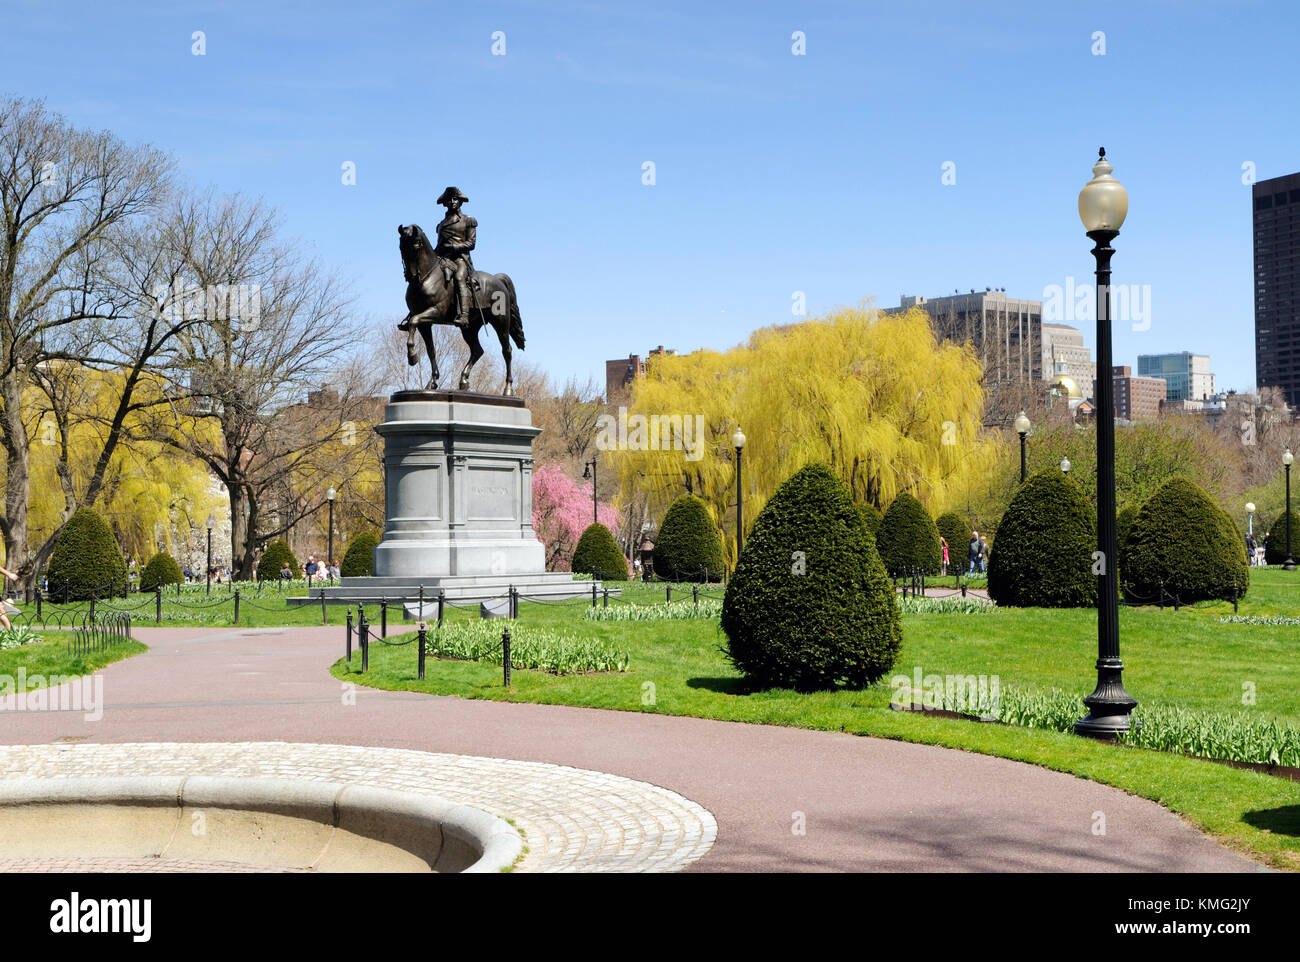 Jardin public de Boston au début du printemps. arbre coloré des fleurs, des sentiers sinueux et George Washington statue. billet d'arrière-plan. Banque D'Images